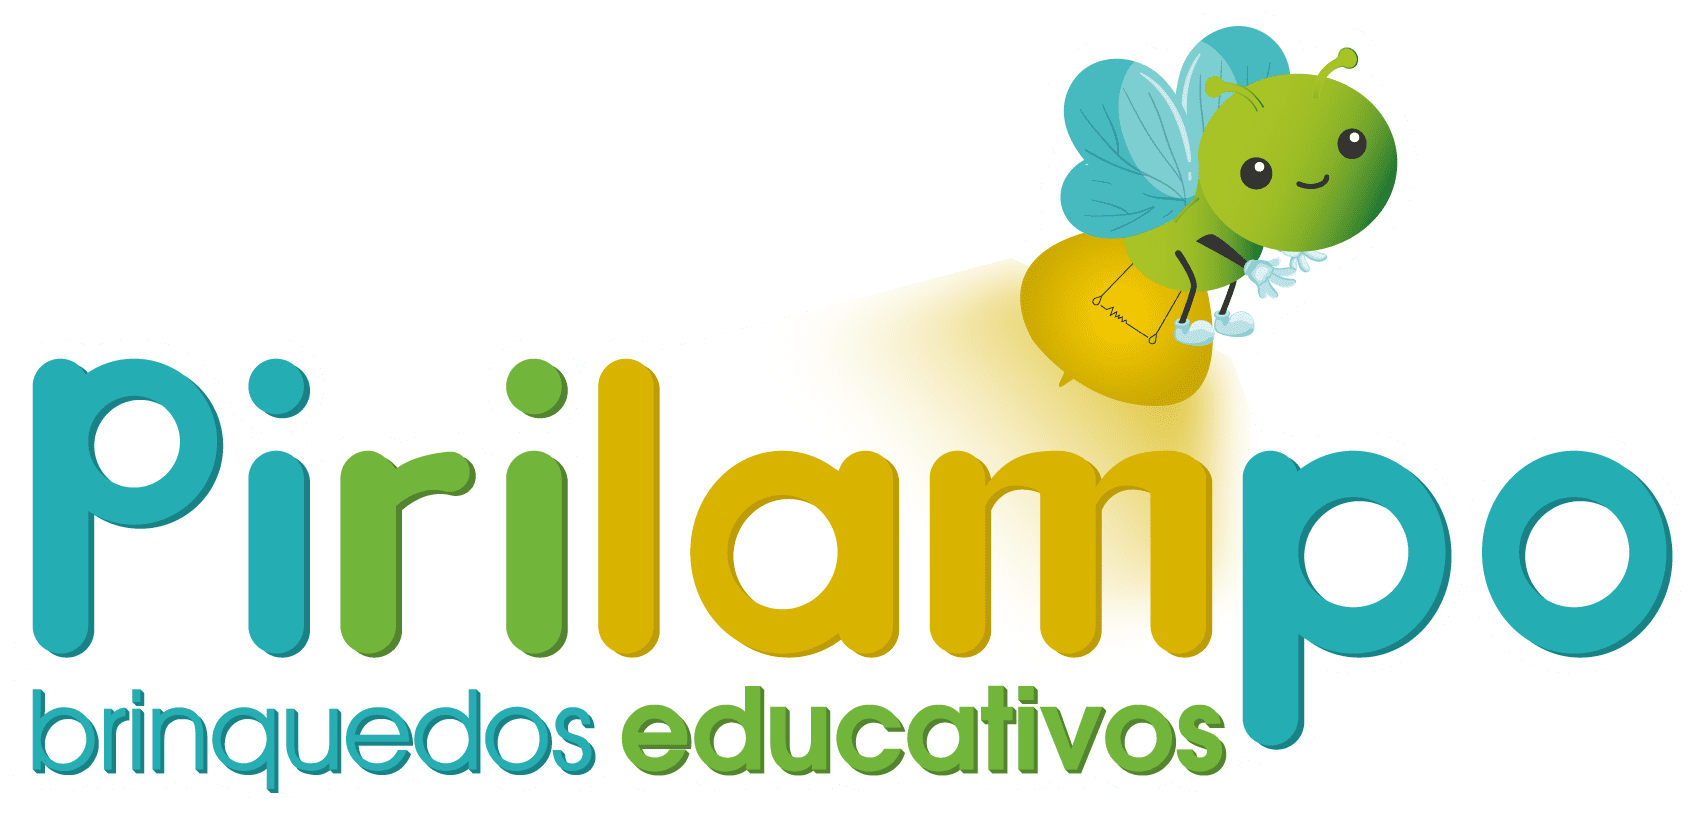 Brinquedos Educativos - Logo Pirilampo